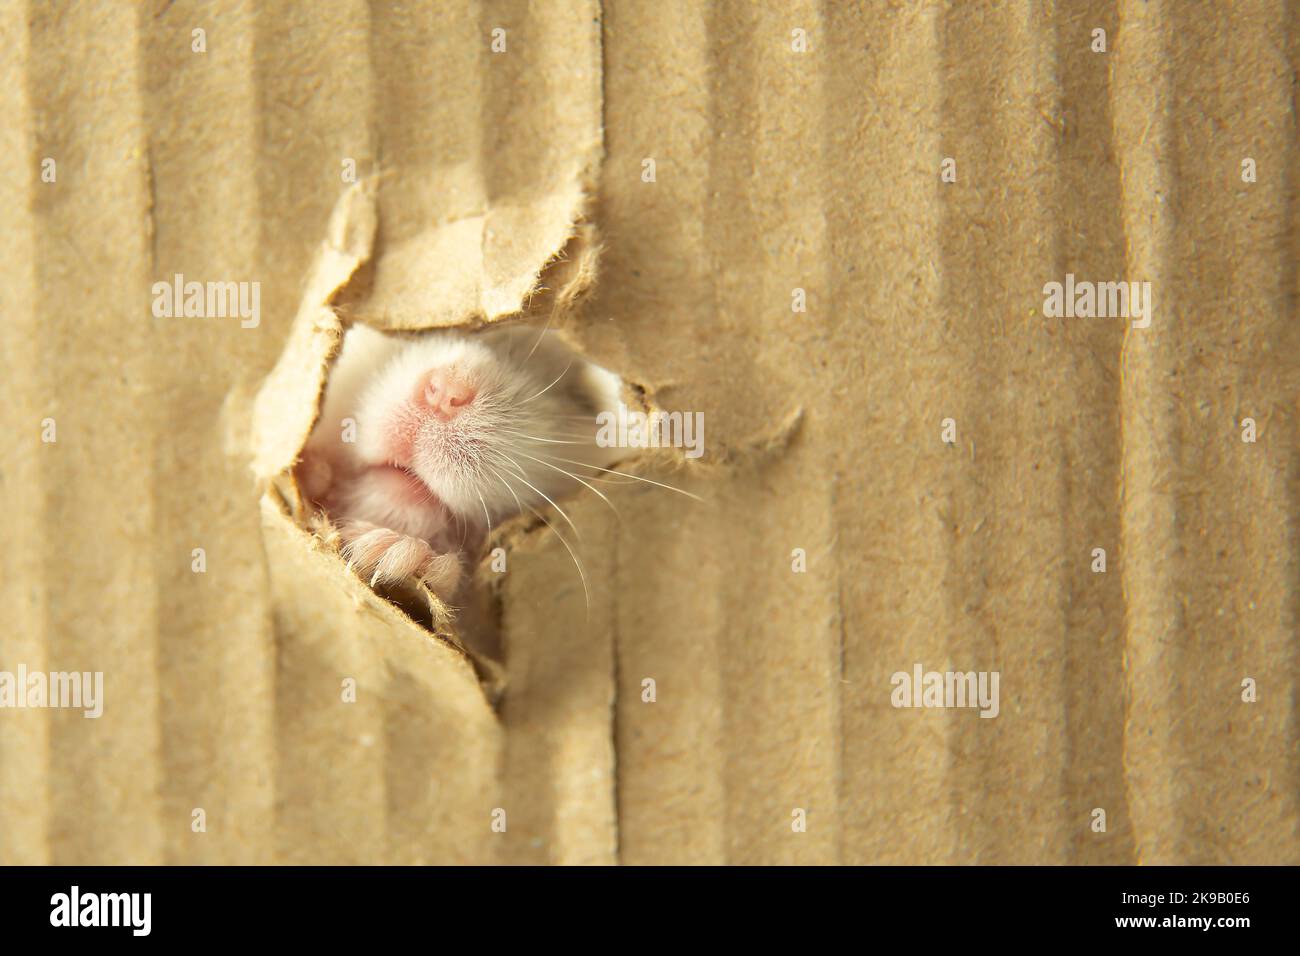 Der Hamster quetscht sich in ein Loch aus Pappe. Neugieriges Mausgesicht. Die Schnauze der Maus kriecht durch das Papierloch. Ein Haustier. Stockfoto